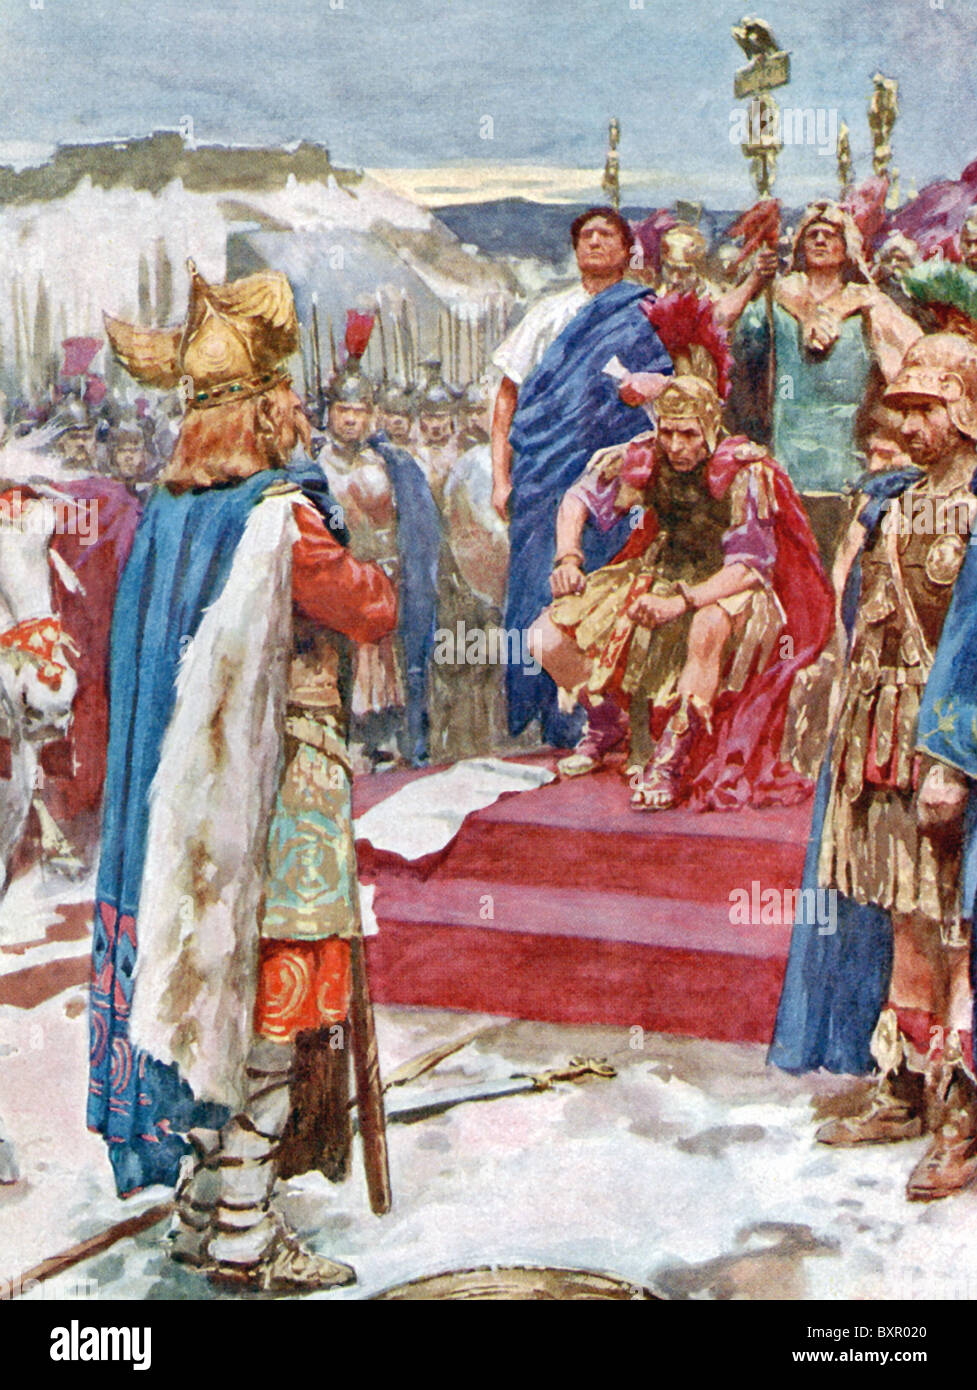 Gallische Häuptling Vercingetorix kapituliert offiziell sein Schwert und selbst zu Julius Caesar. Stockfoto